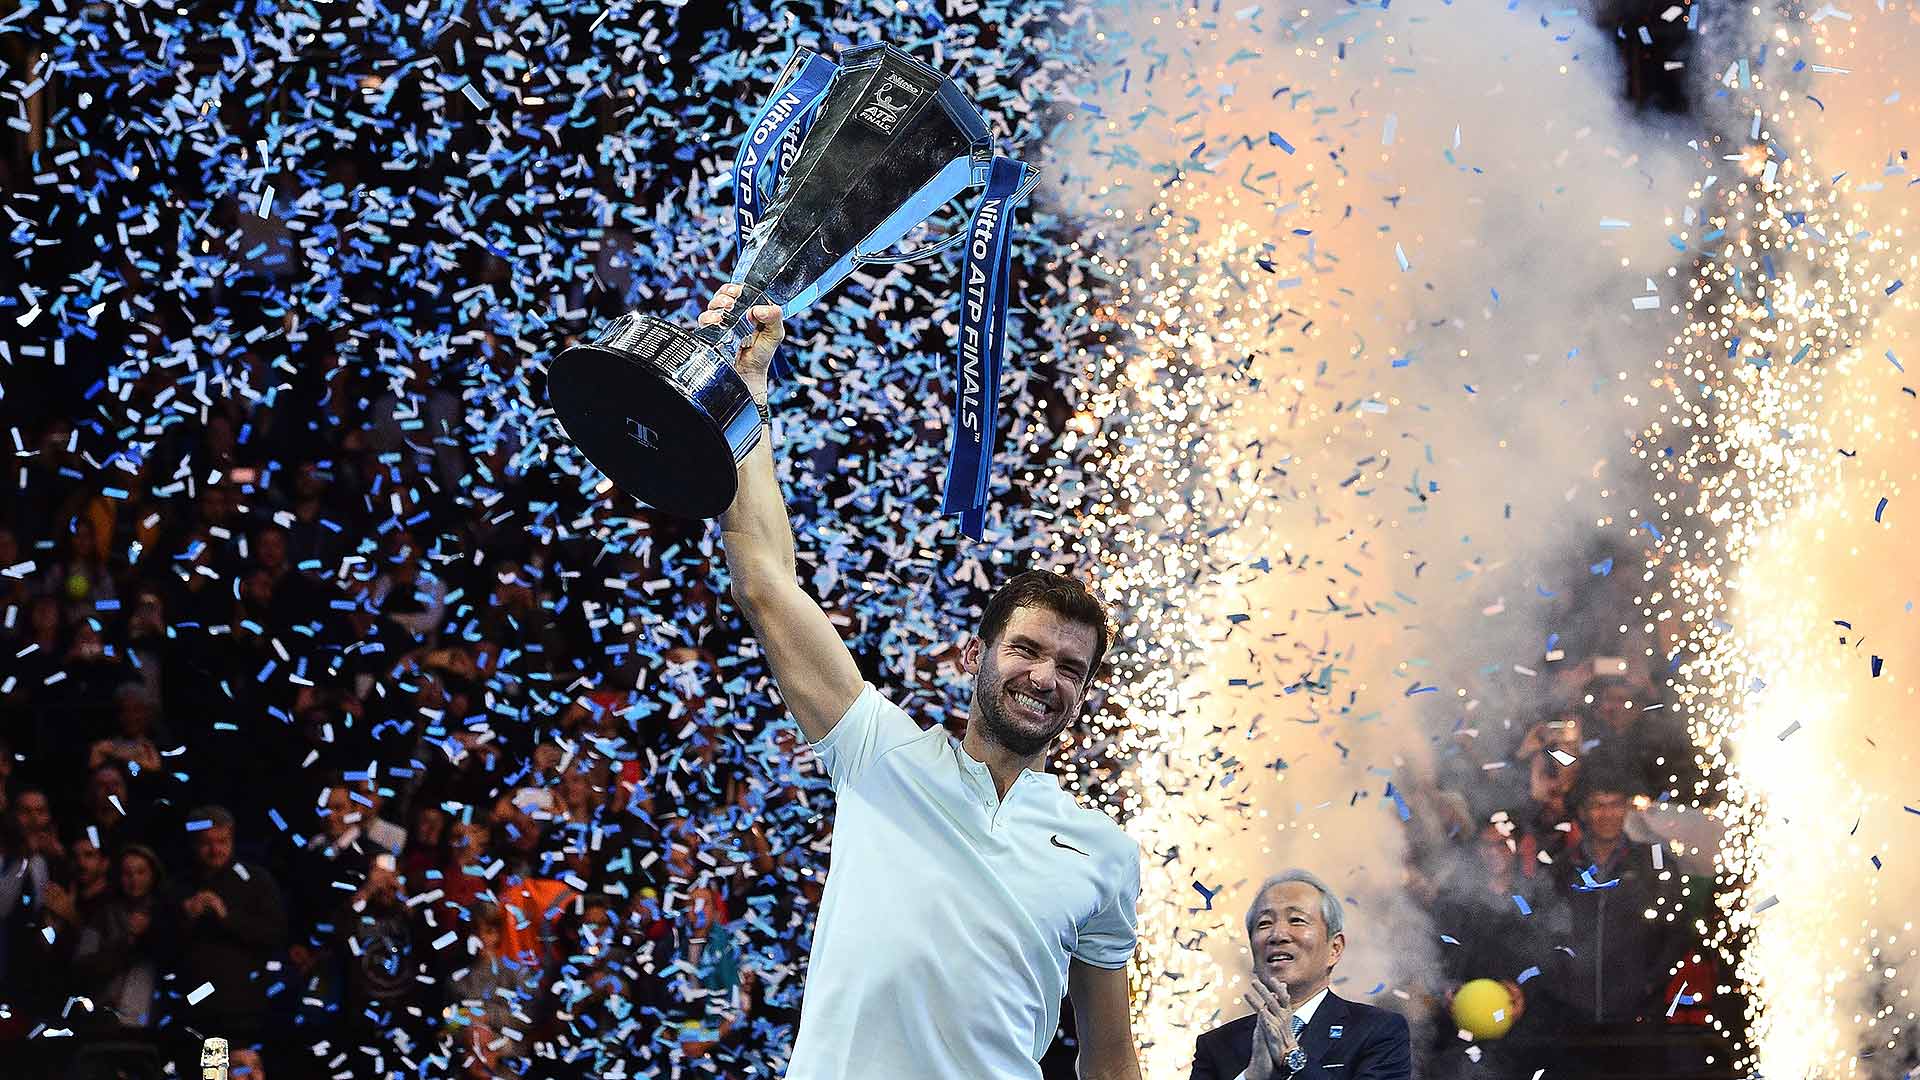 <a href='https://www.atptour.com/en/players/grigor-dimitrov/d875/overview'>Grigor Dimitrov</a> hoists the 2017 <a href='https://www.atptour.com/en/tournaments/nitto-atp-finals/605/overview'>Nitto ATP Finals</a> trophy.